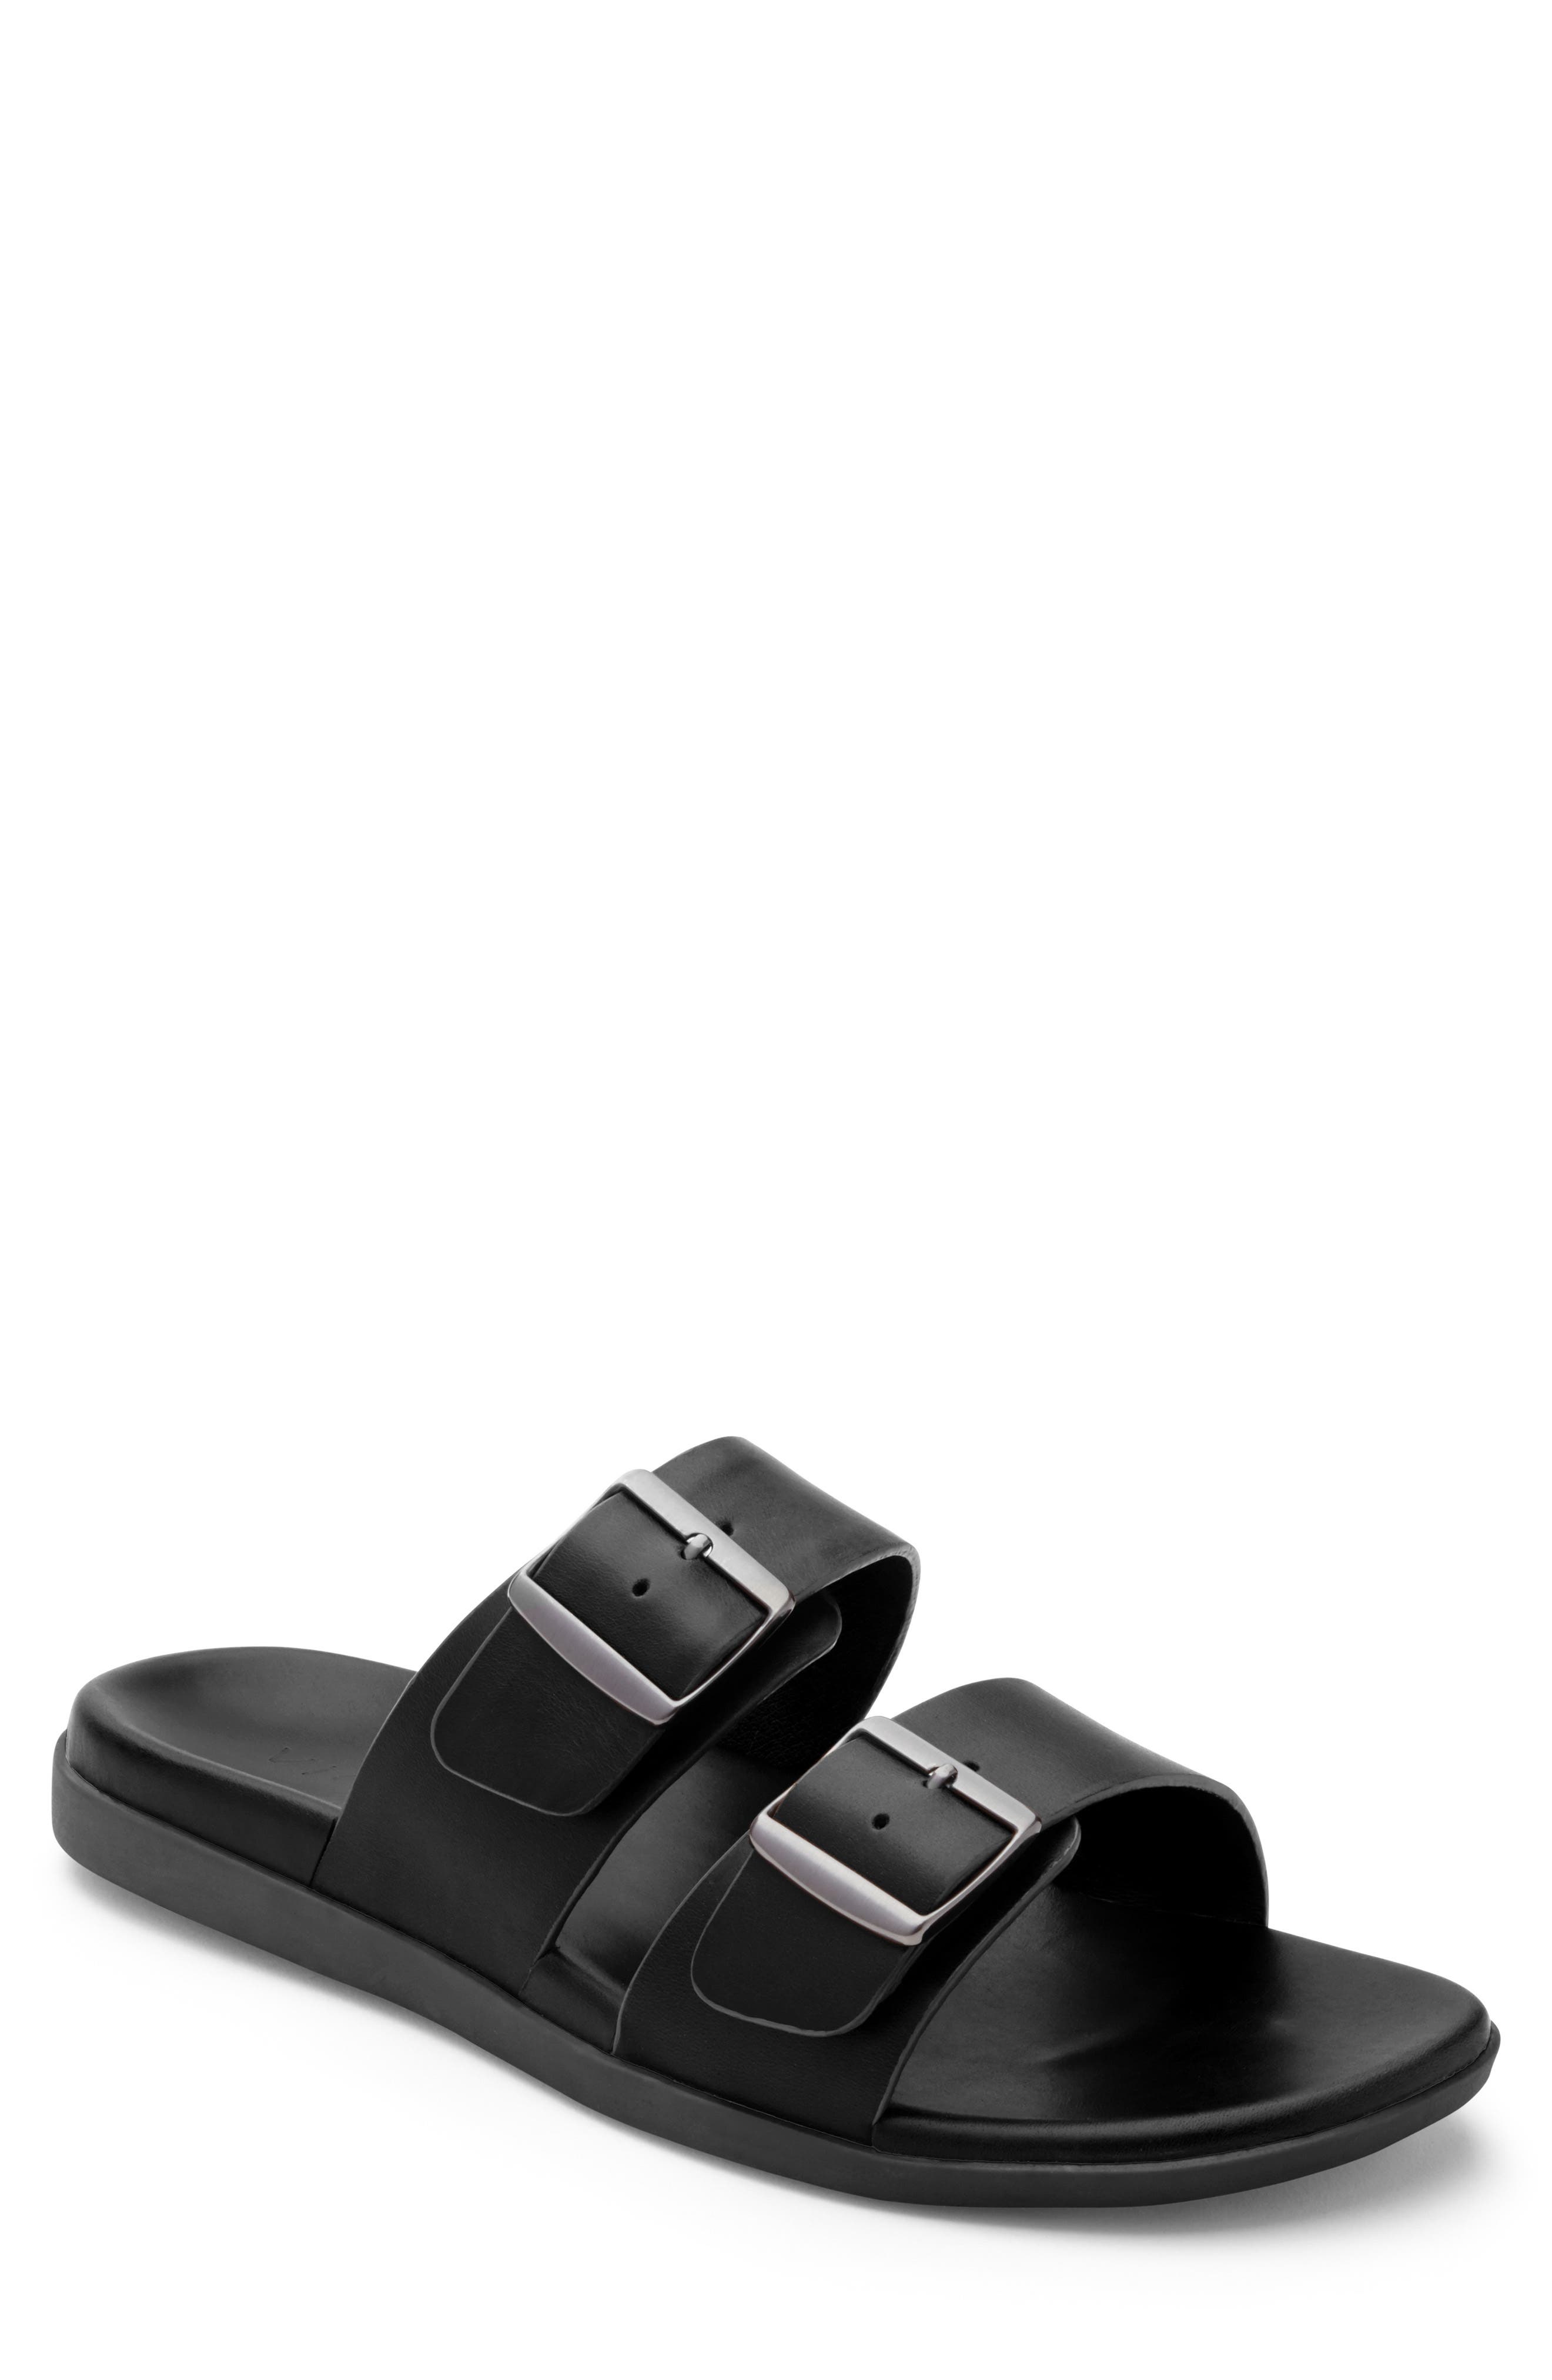 vionic sandals size 8